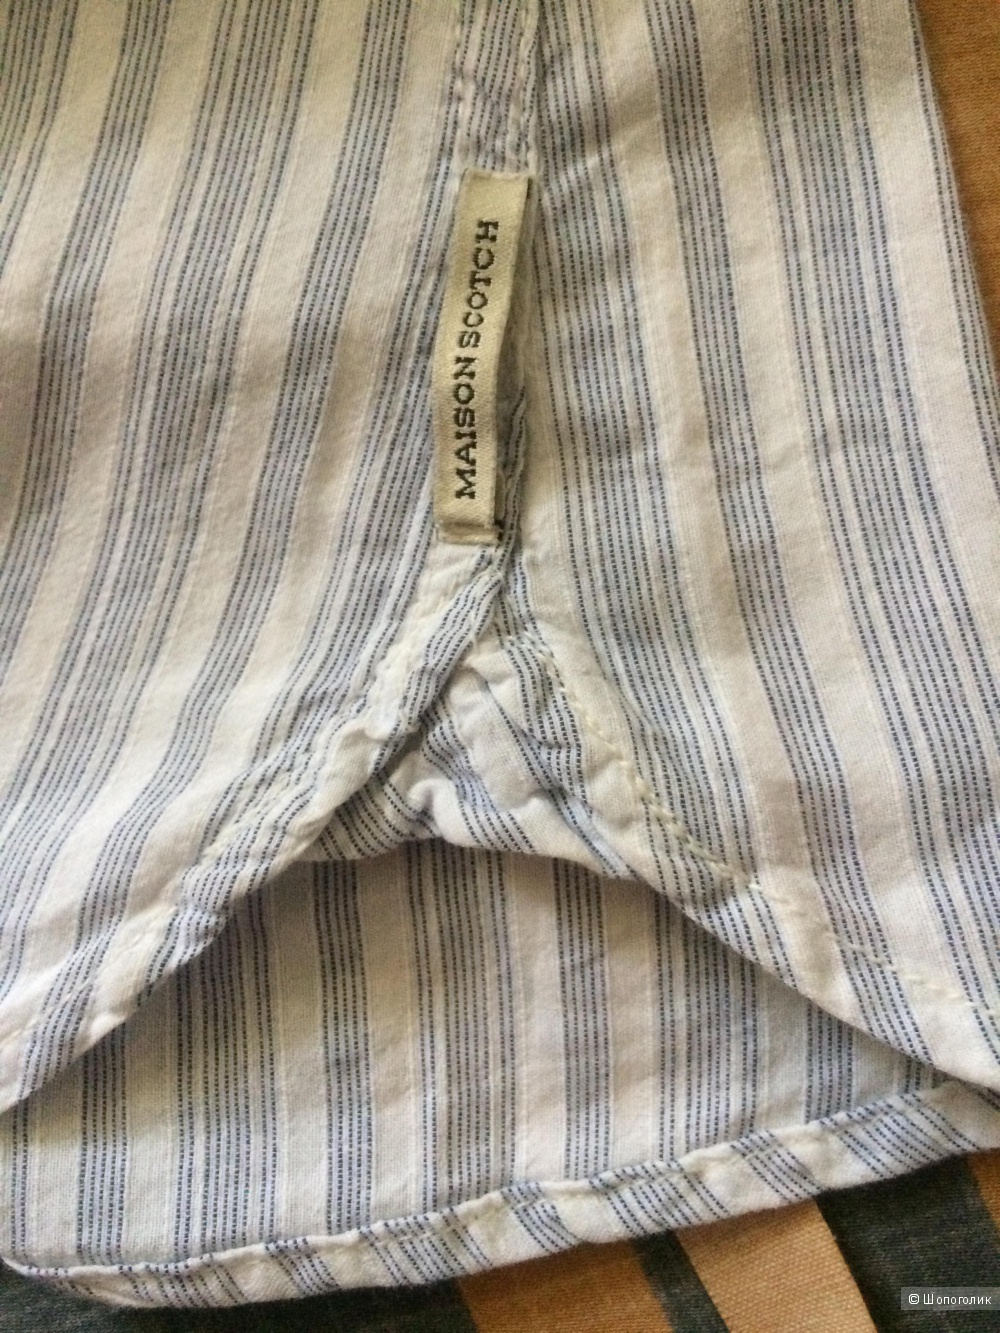 Рубашка MAISON SCOTCH размер 2 (42-44)